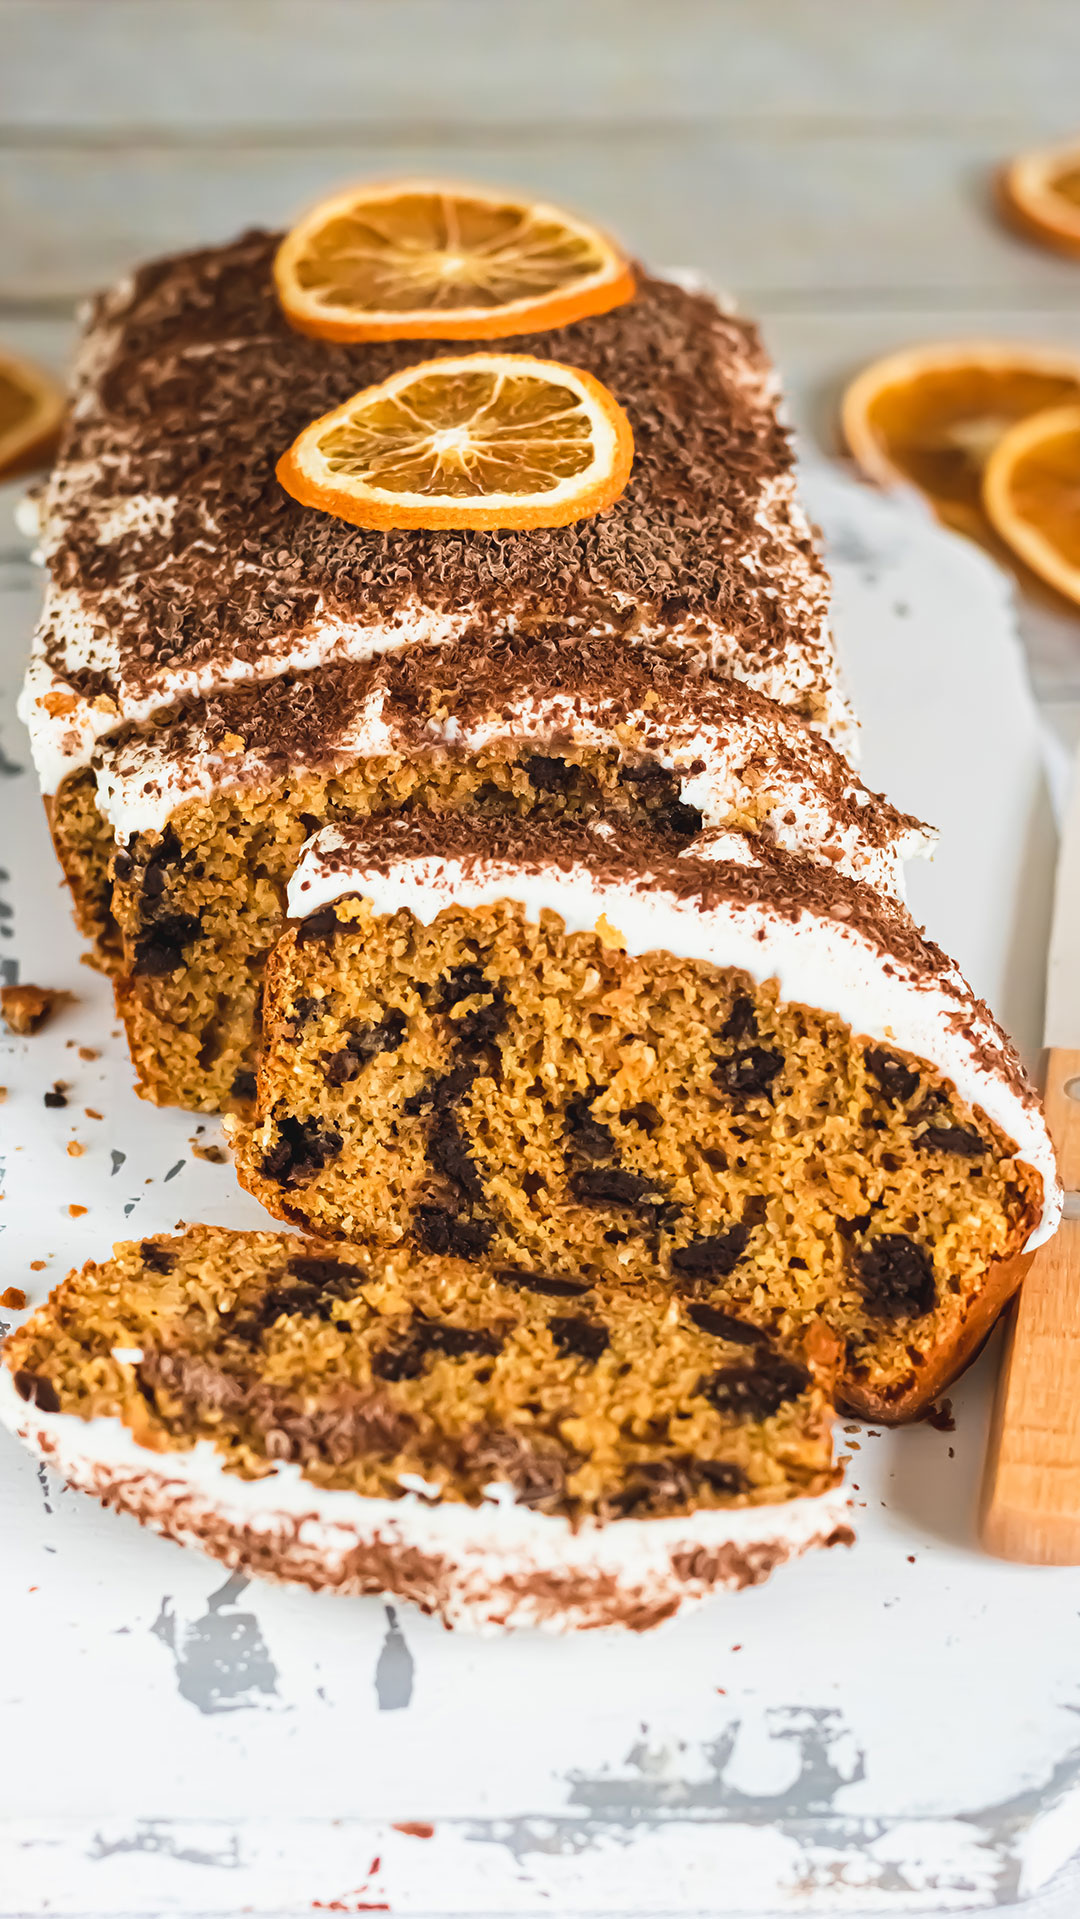 recette healthy - Carrot cake au chocolat et vanille